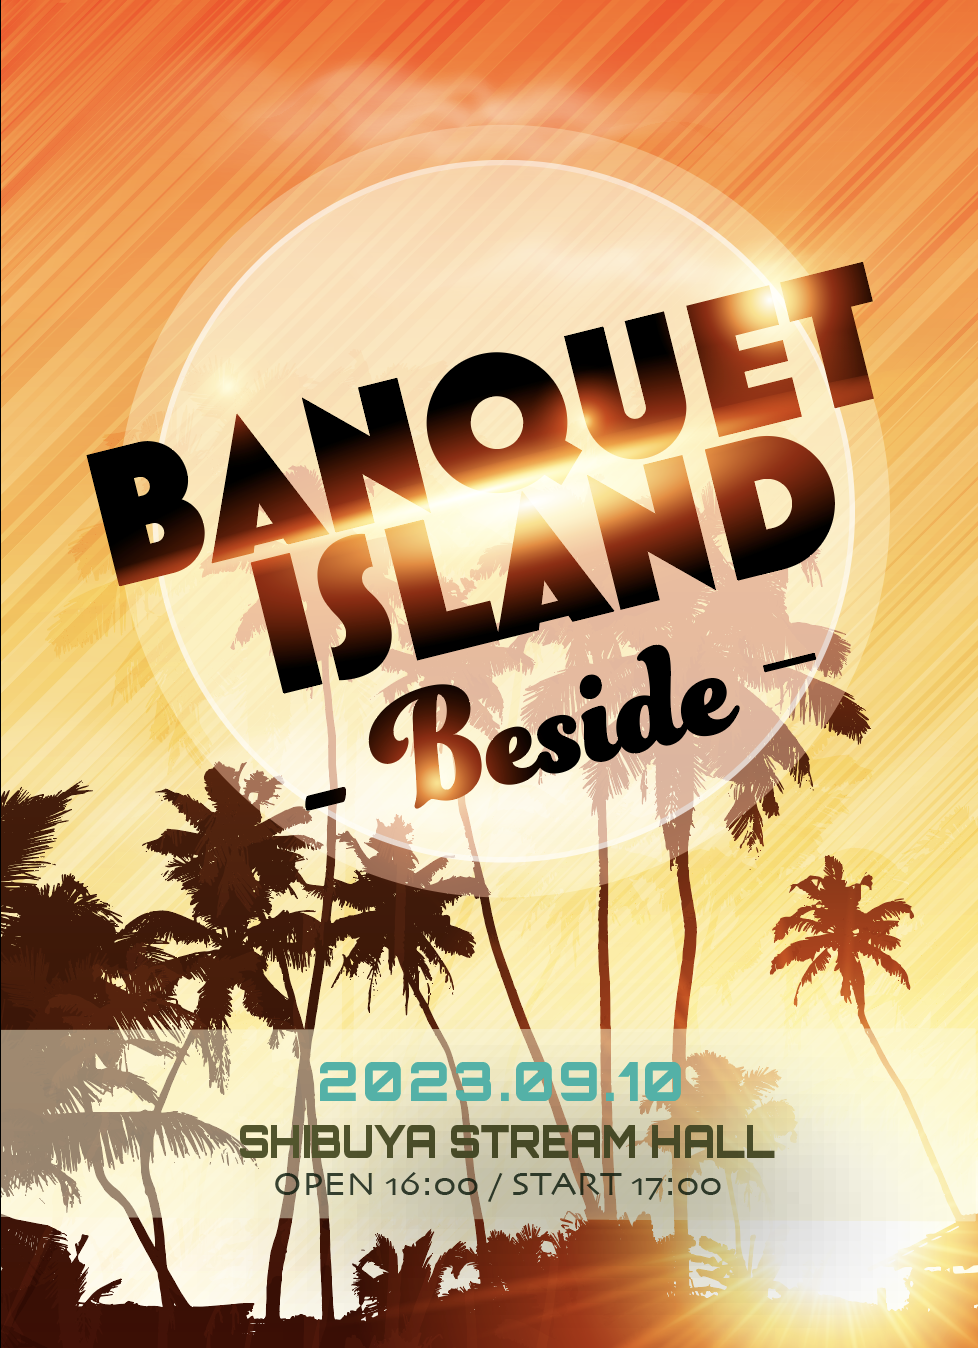 9月10日(日)『BANQUET ISLAND – Beside -』ご友人招待企画について